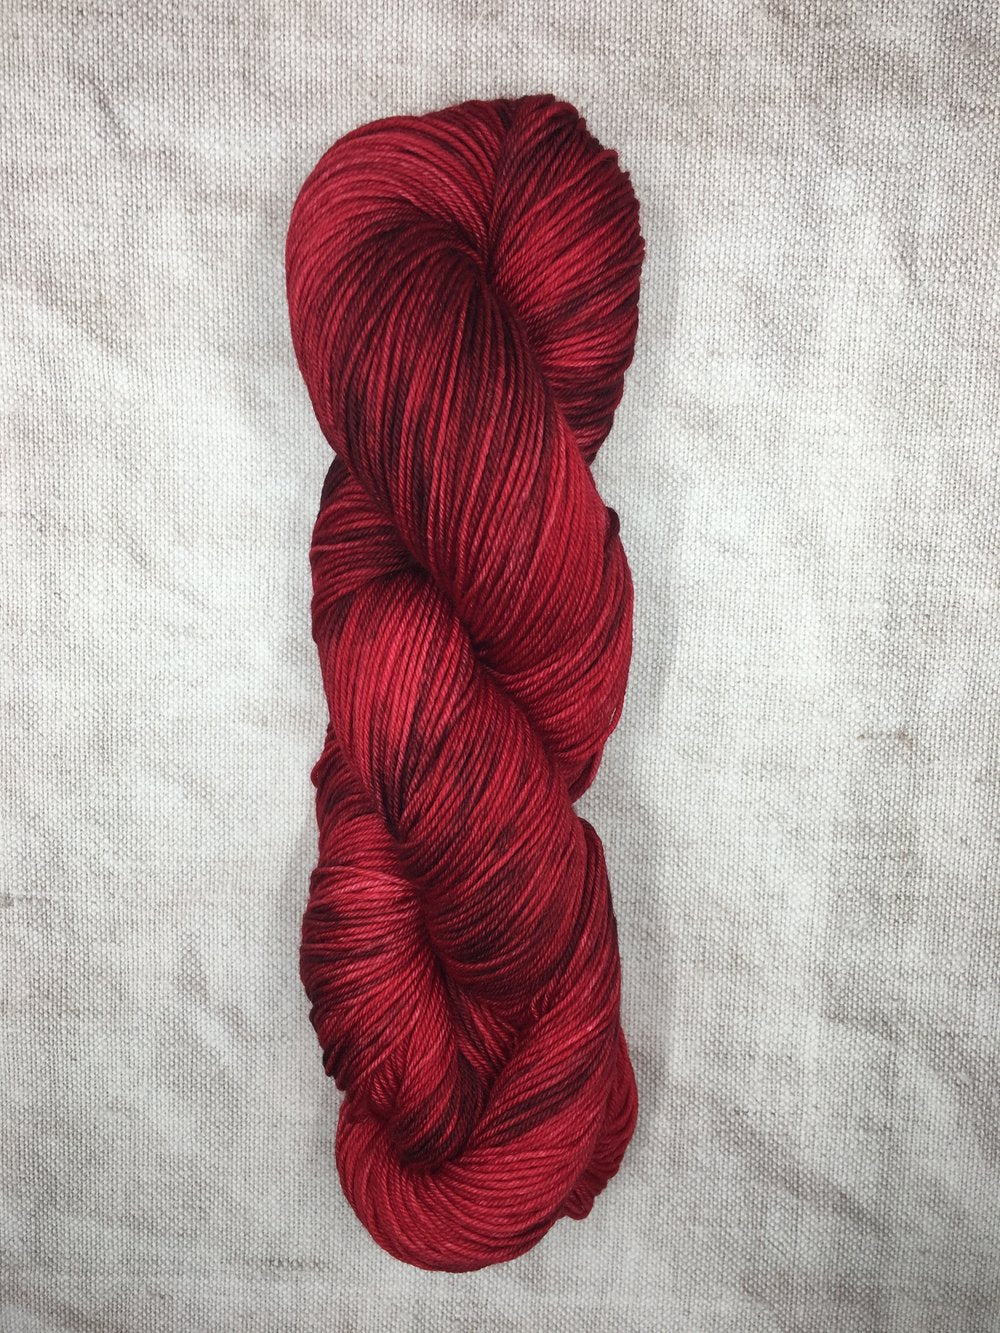 Hand dyed merino wool yarn